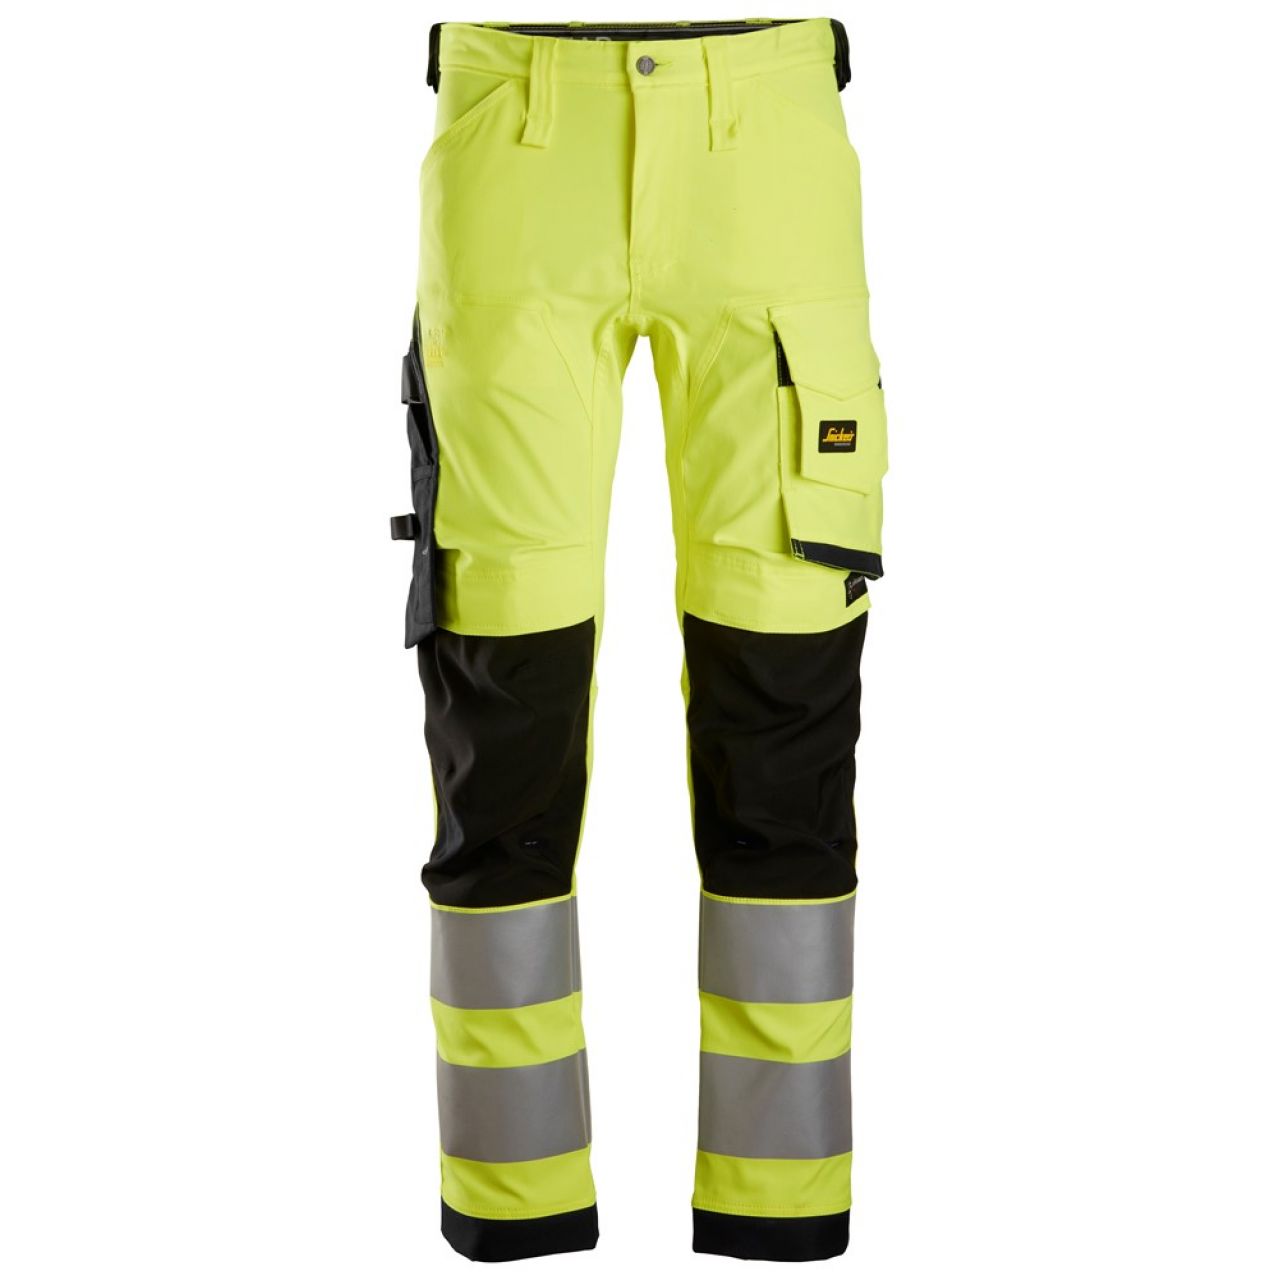 6343 Pantalones largos de trabajo elásticos de alta visibilidad clase 2 amarillo-negro talla 124